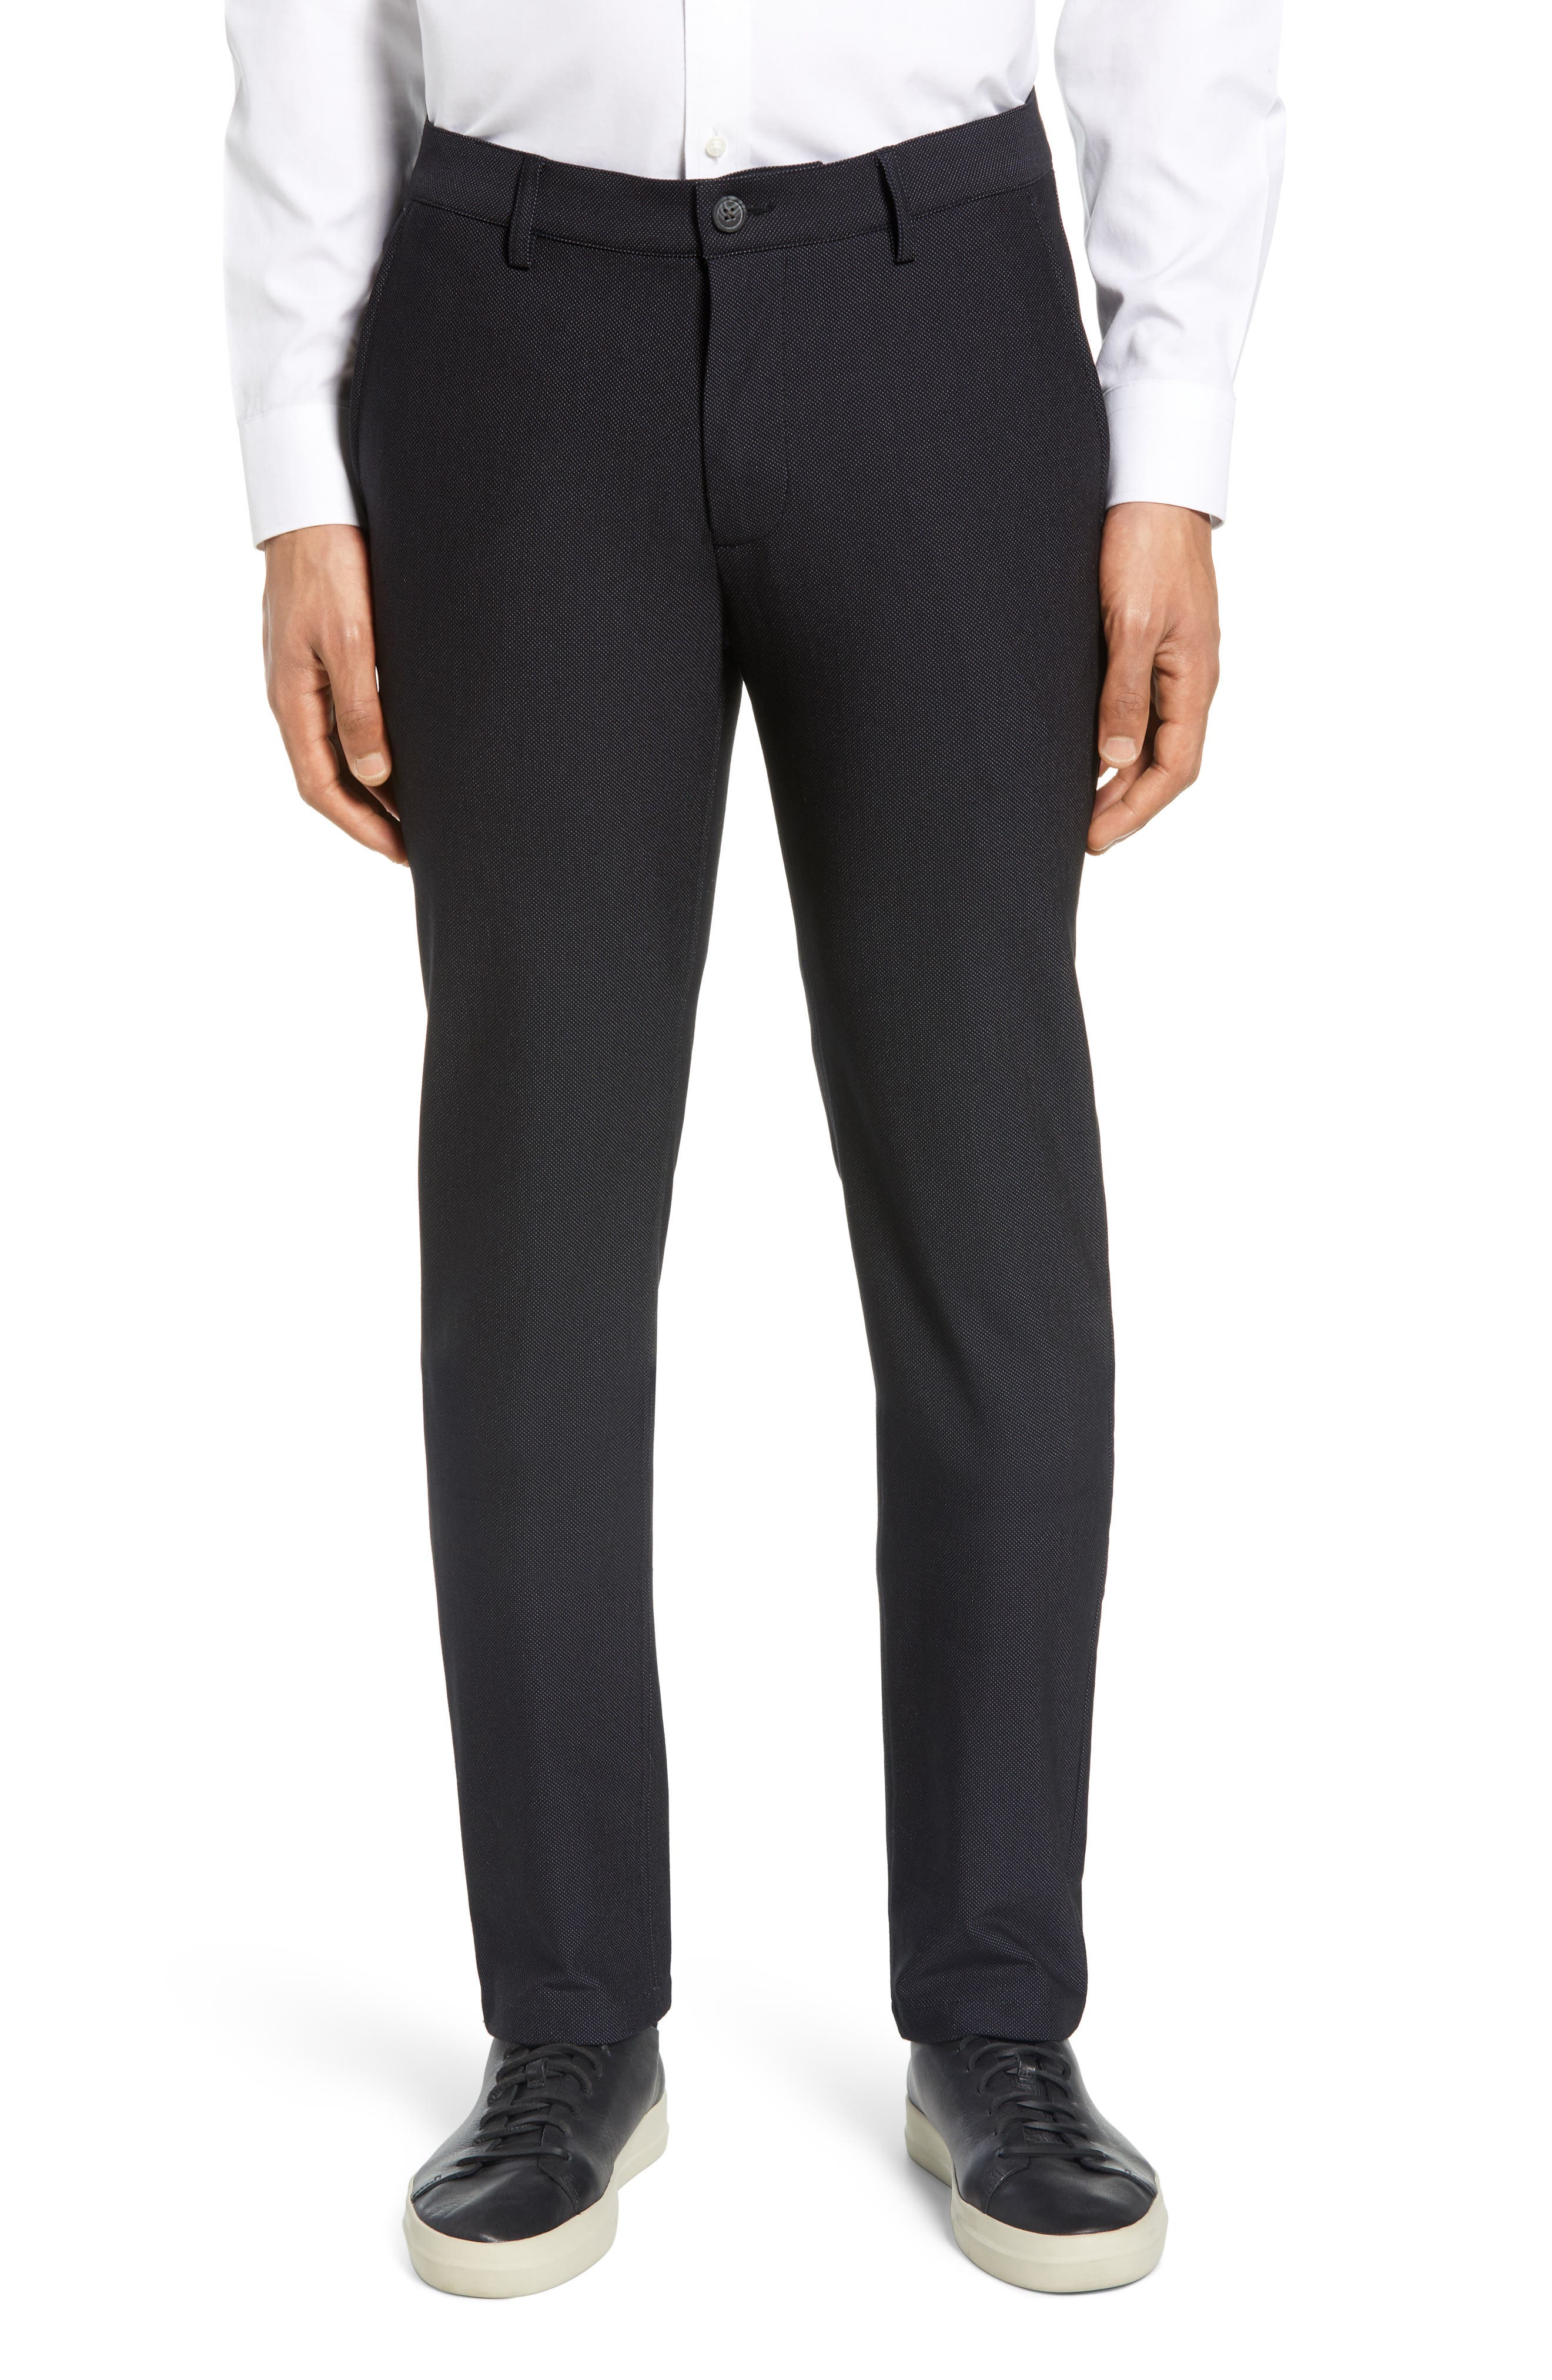 Vince Camuto Mens Dress Pants Gray Size 36x32 Slm Fit Plaid Stretch $135 167